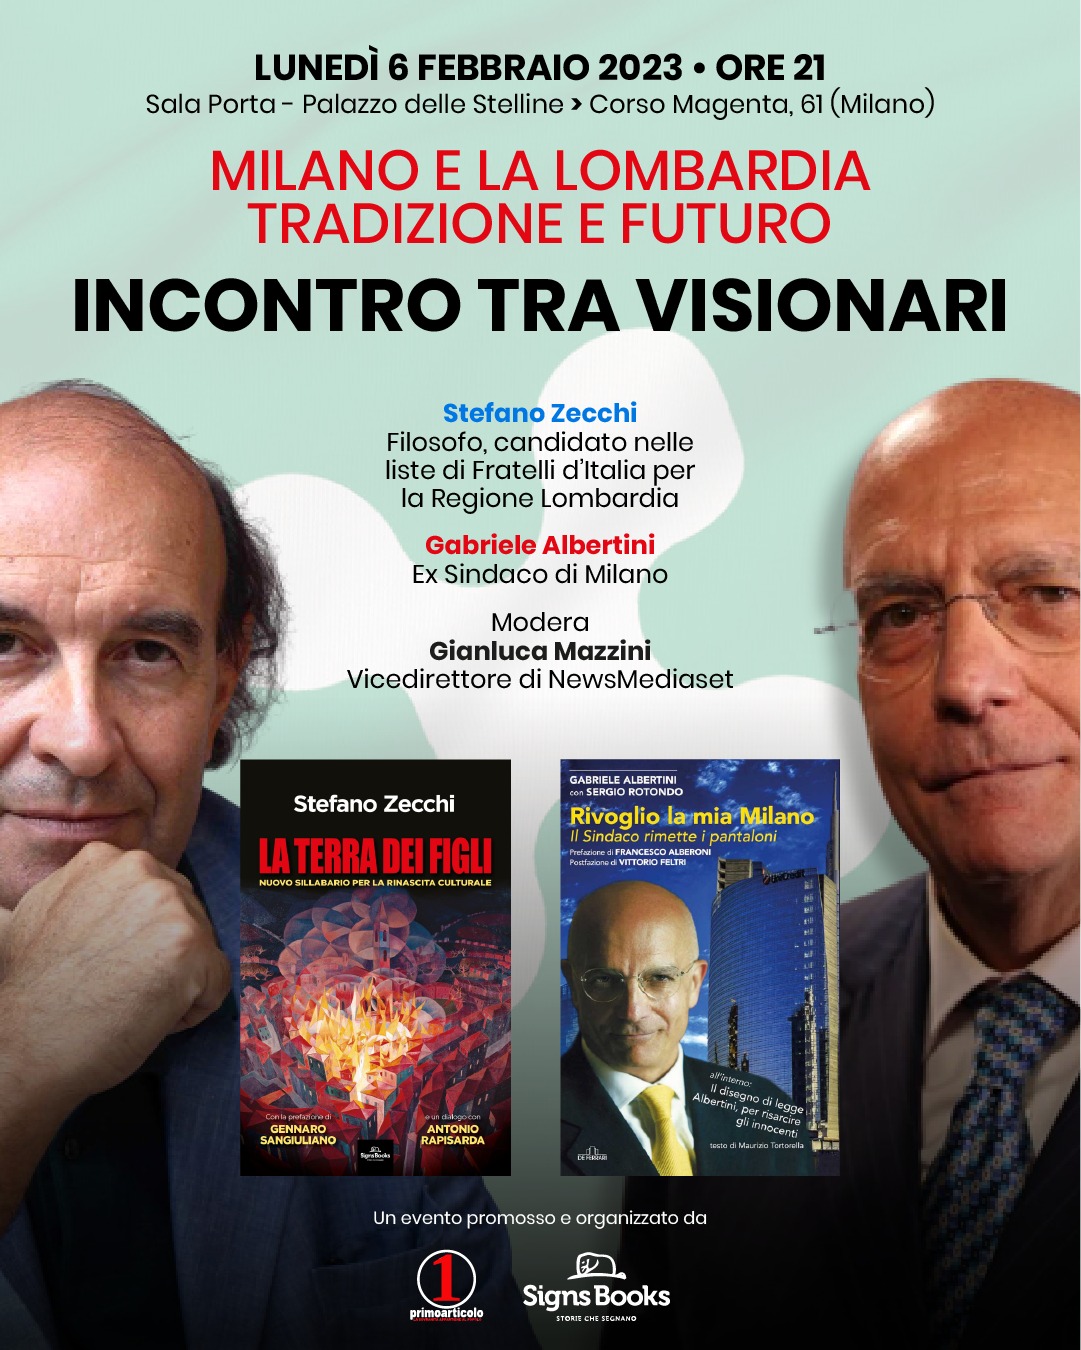 INCONTRO TRA VISIONARI. Milano e Lombardia, tradizione e futuro.